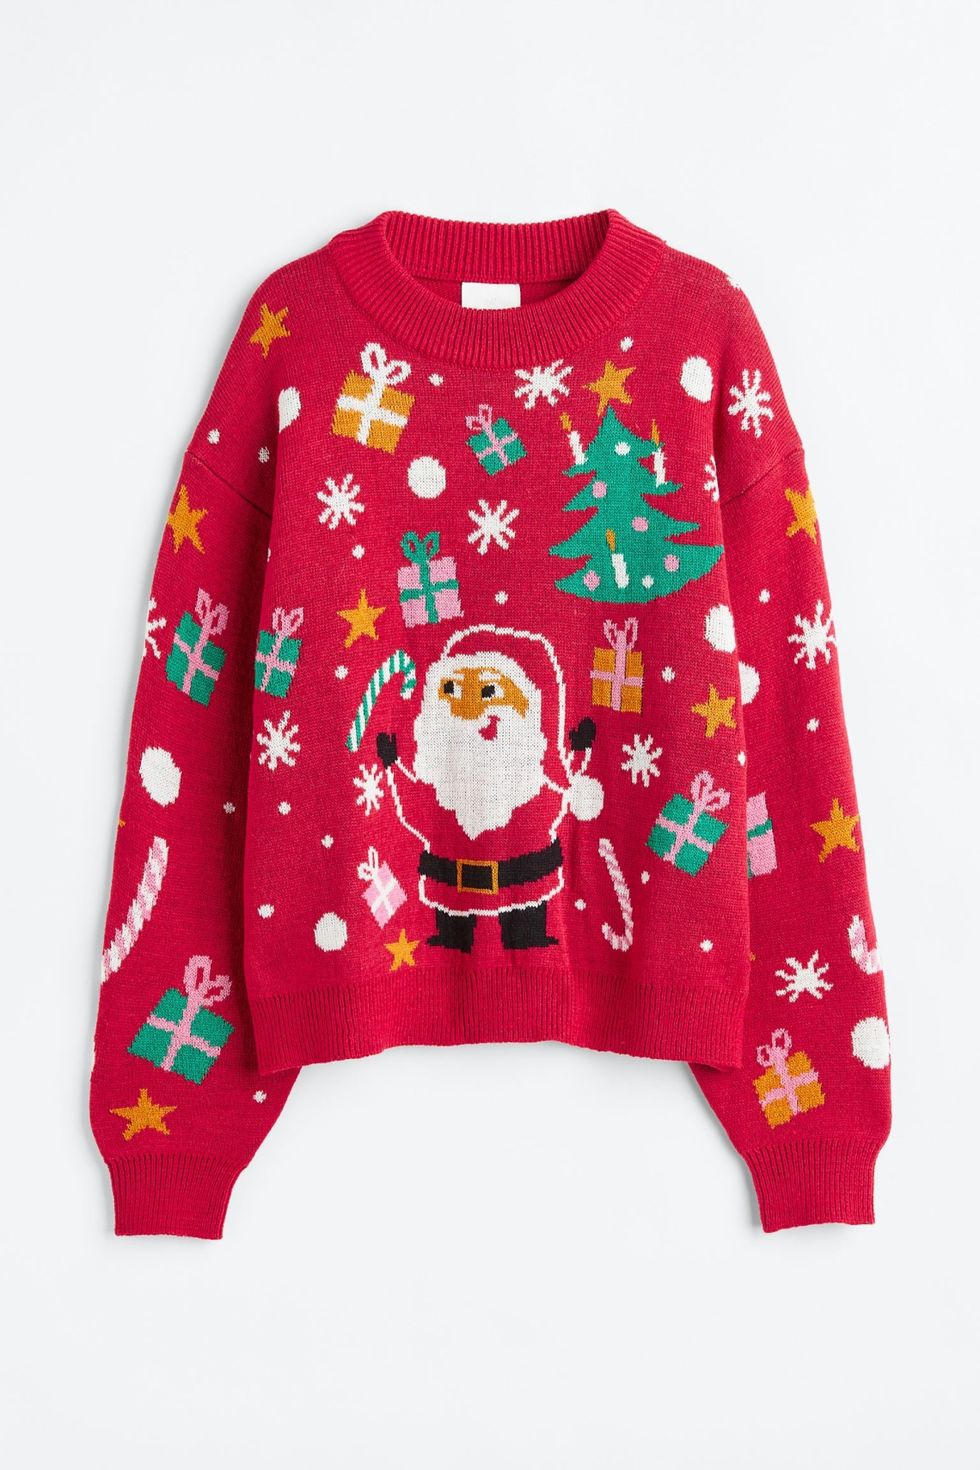 jersey navidad mujer original, jerseis navideños